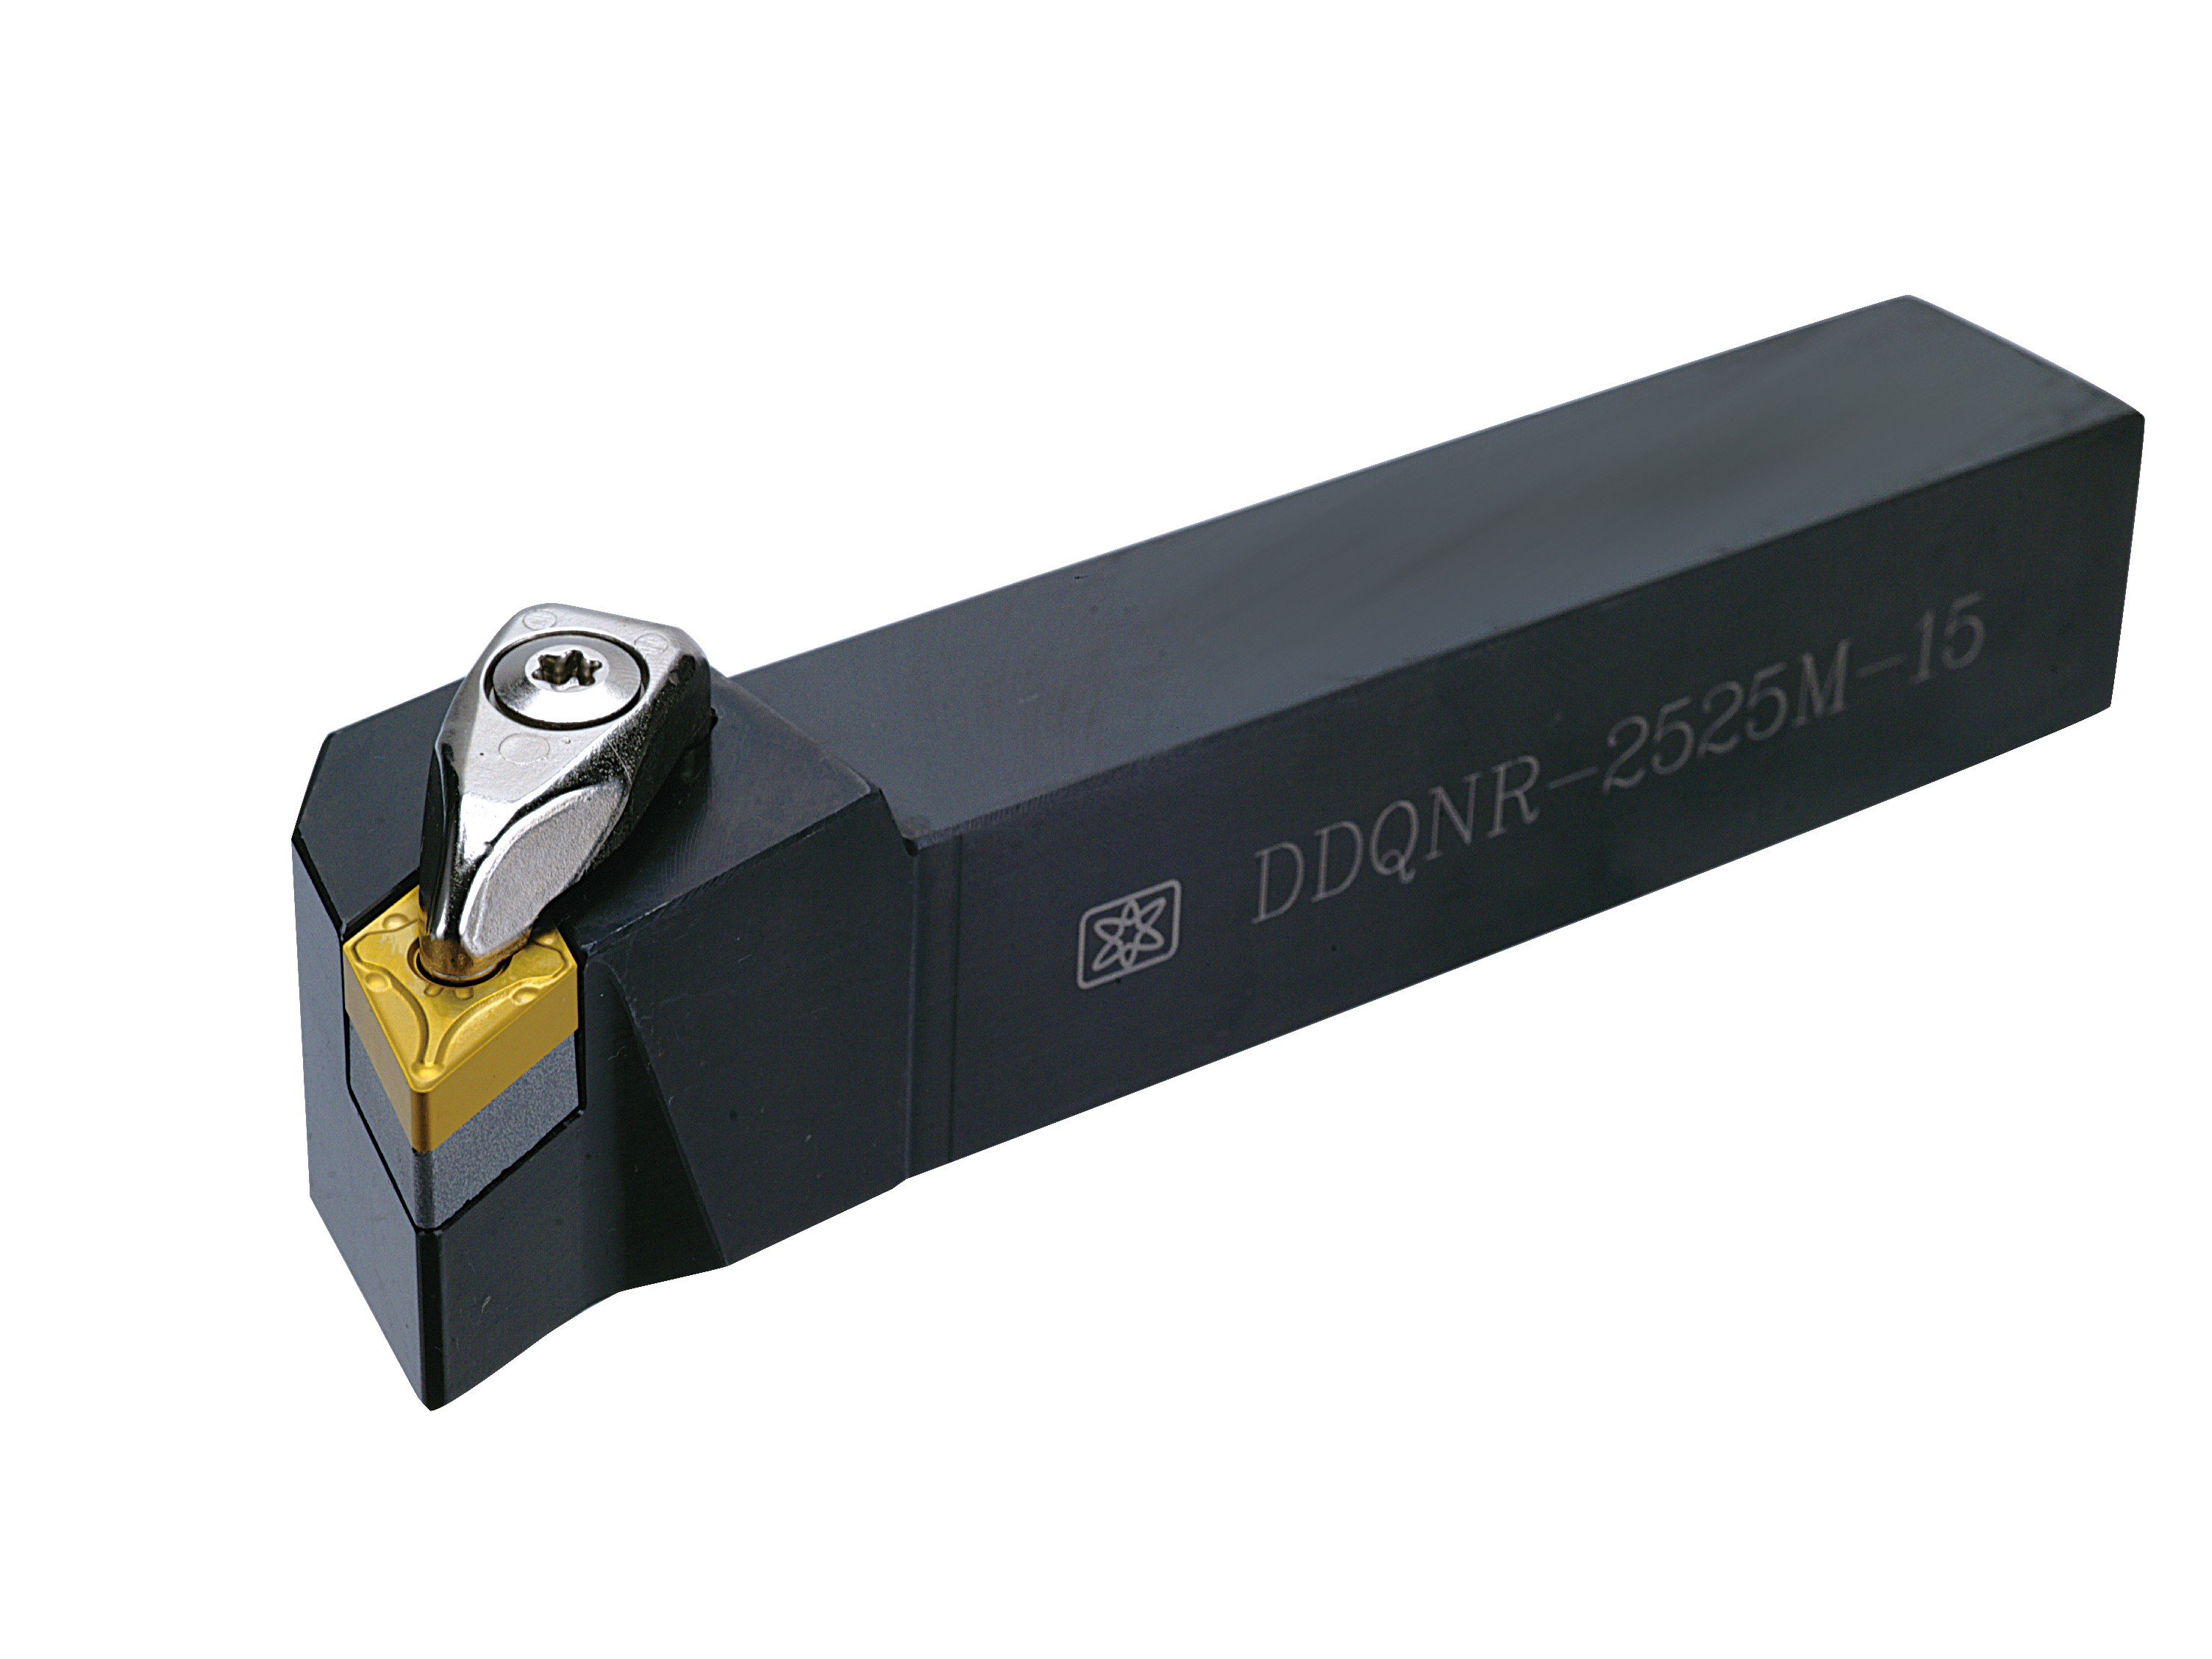 DDQNR (DNMG1504 / DNMG1506) 外徑車刀